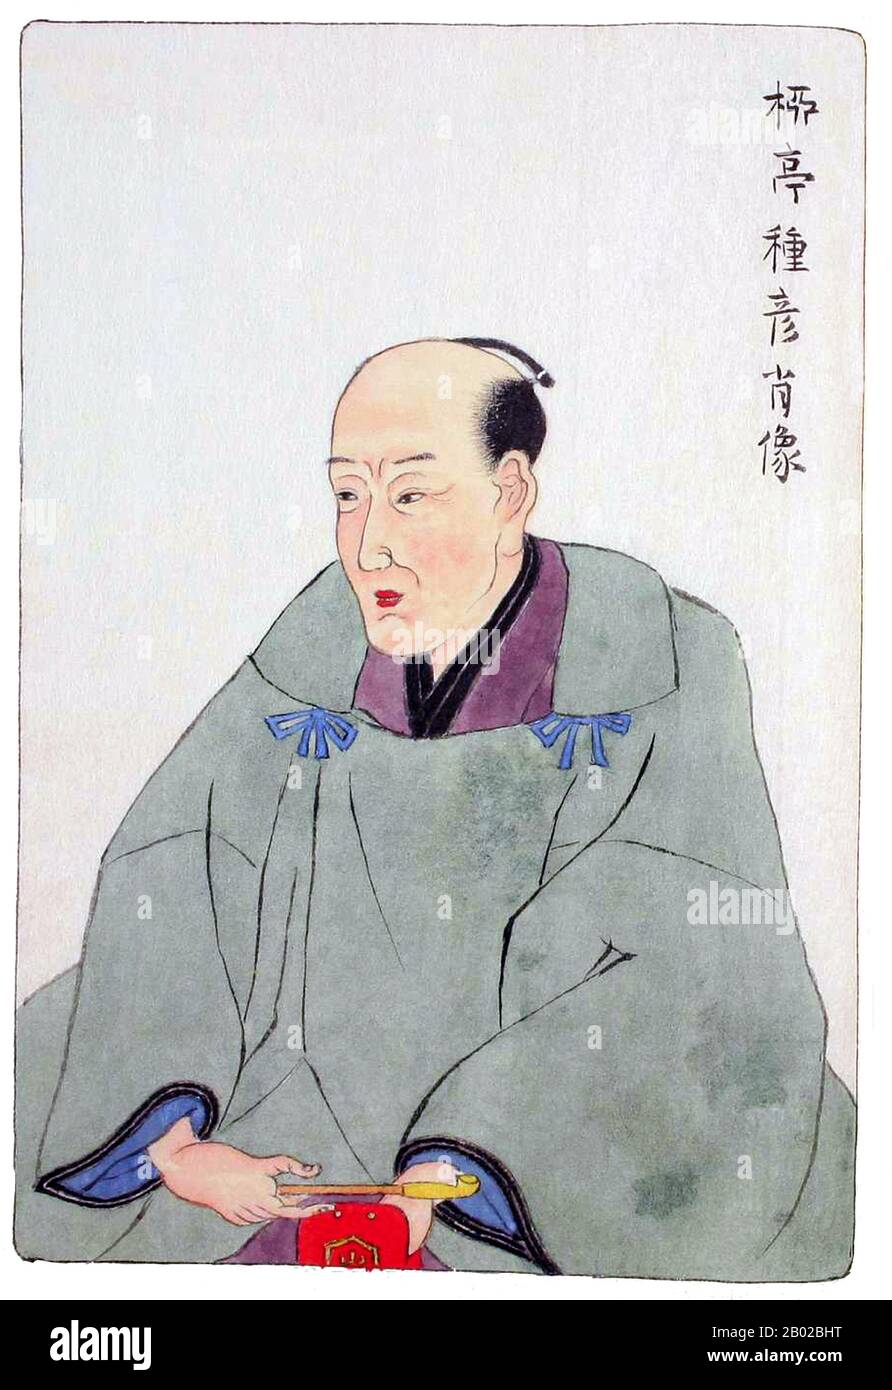 Ryūtei Tanehiko (柳 亭 种 彦? ) (le 11 juillet 1783, Edo - le 24 août 1842) était un écrivain japonais et une figure littéraire. Né dans une famille samouraï de grade inférieur , il a grandi dans un environnement relativement humble. Il a commencé sa carrière littéraire en tant qu'auteur de poèmes Kyōka sur le modèle Ota Nampo. Son professeur était Karagoromo Kisshu et, après la mort de ce dernier en 1802, Shikatsube Magao. 1805 il rencontre Masamochi Ishikawa qui était aussi parmi ses mentors. En 1807, Tanehiko publie la première d'une série de romans, menant au succès littéraire parmi ses contemporains. Sa renommée littéraire est largement basée sur l'illustrateur Banque D'Images